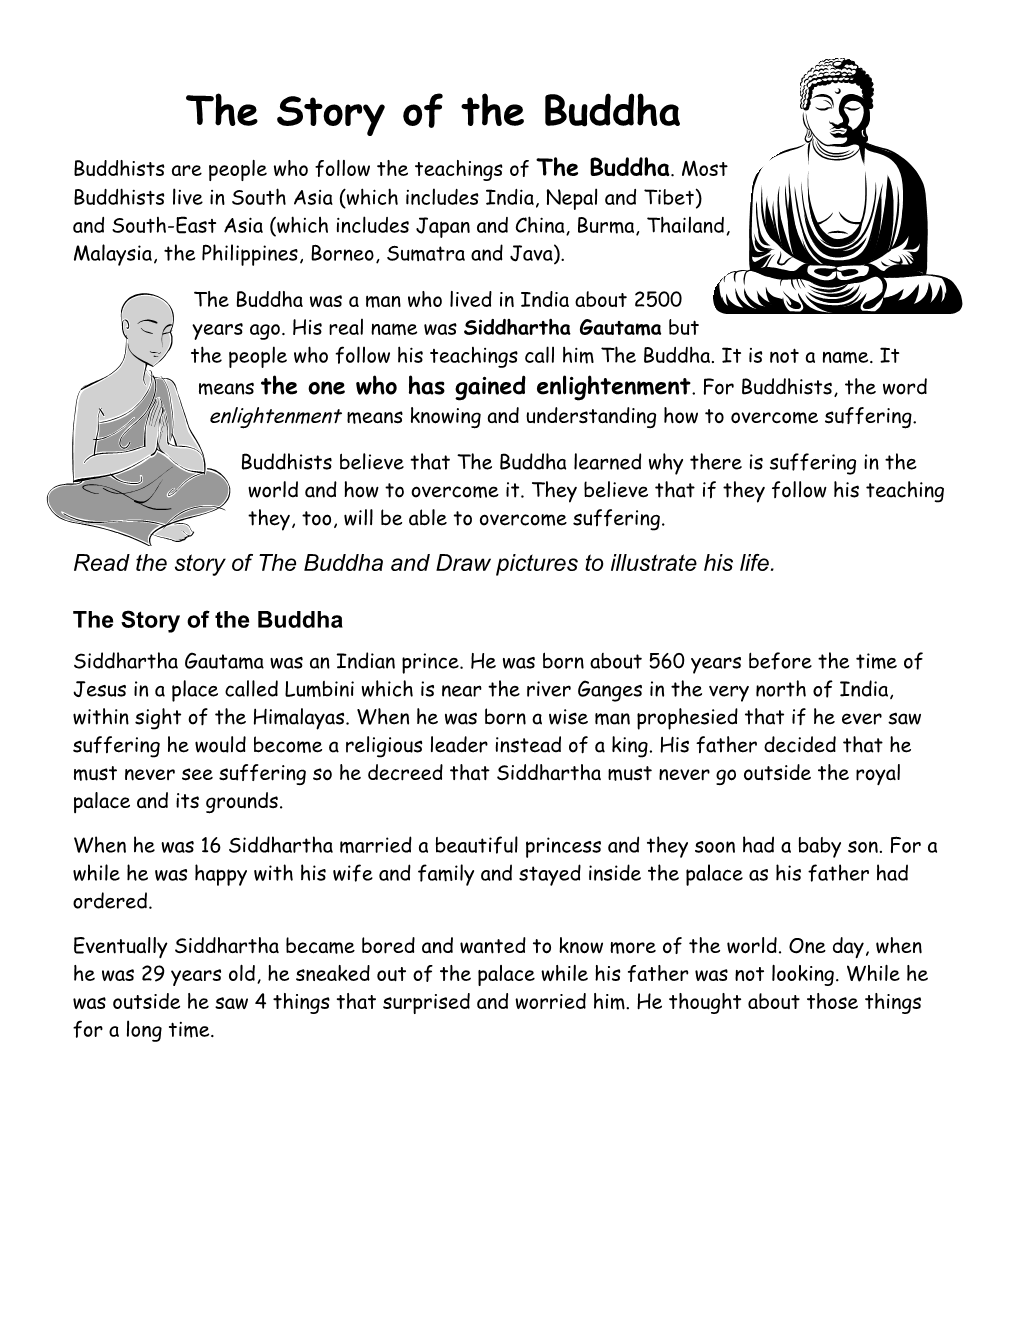 Buddhists, Buddhism and the Buddha